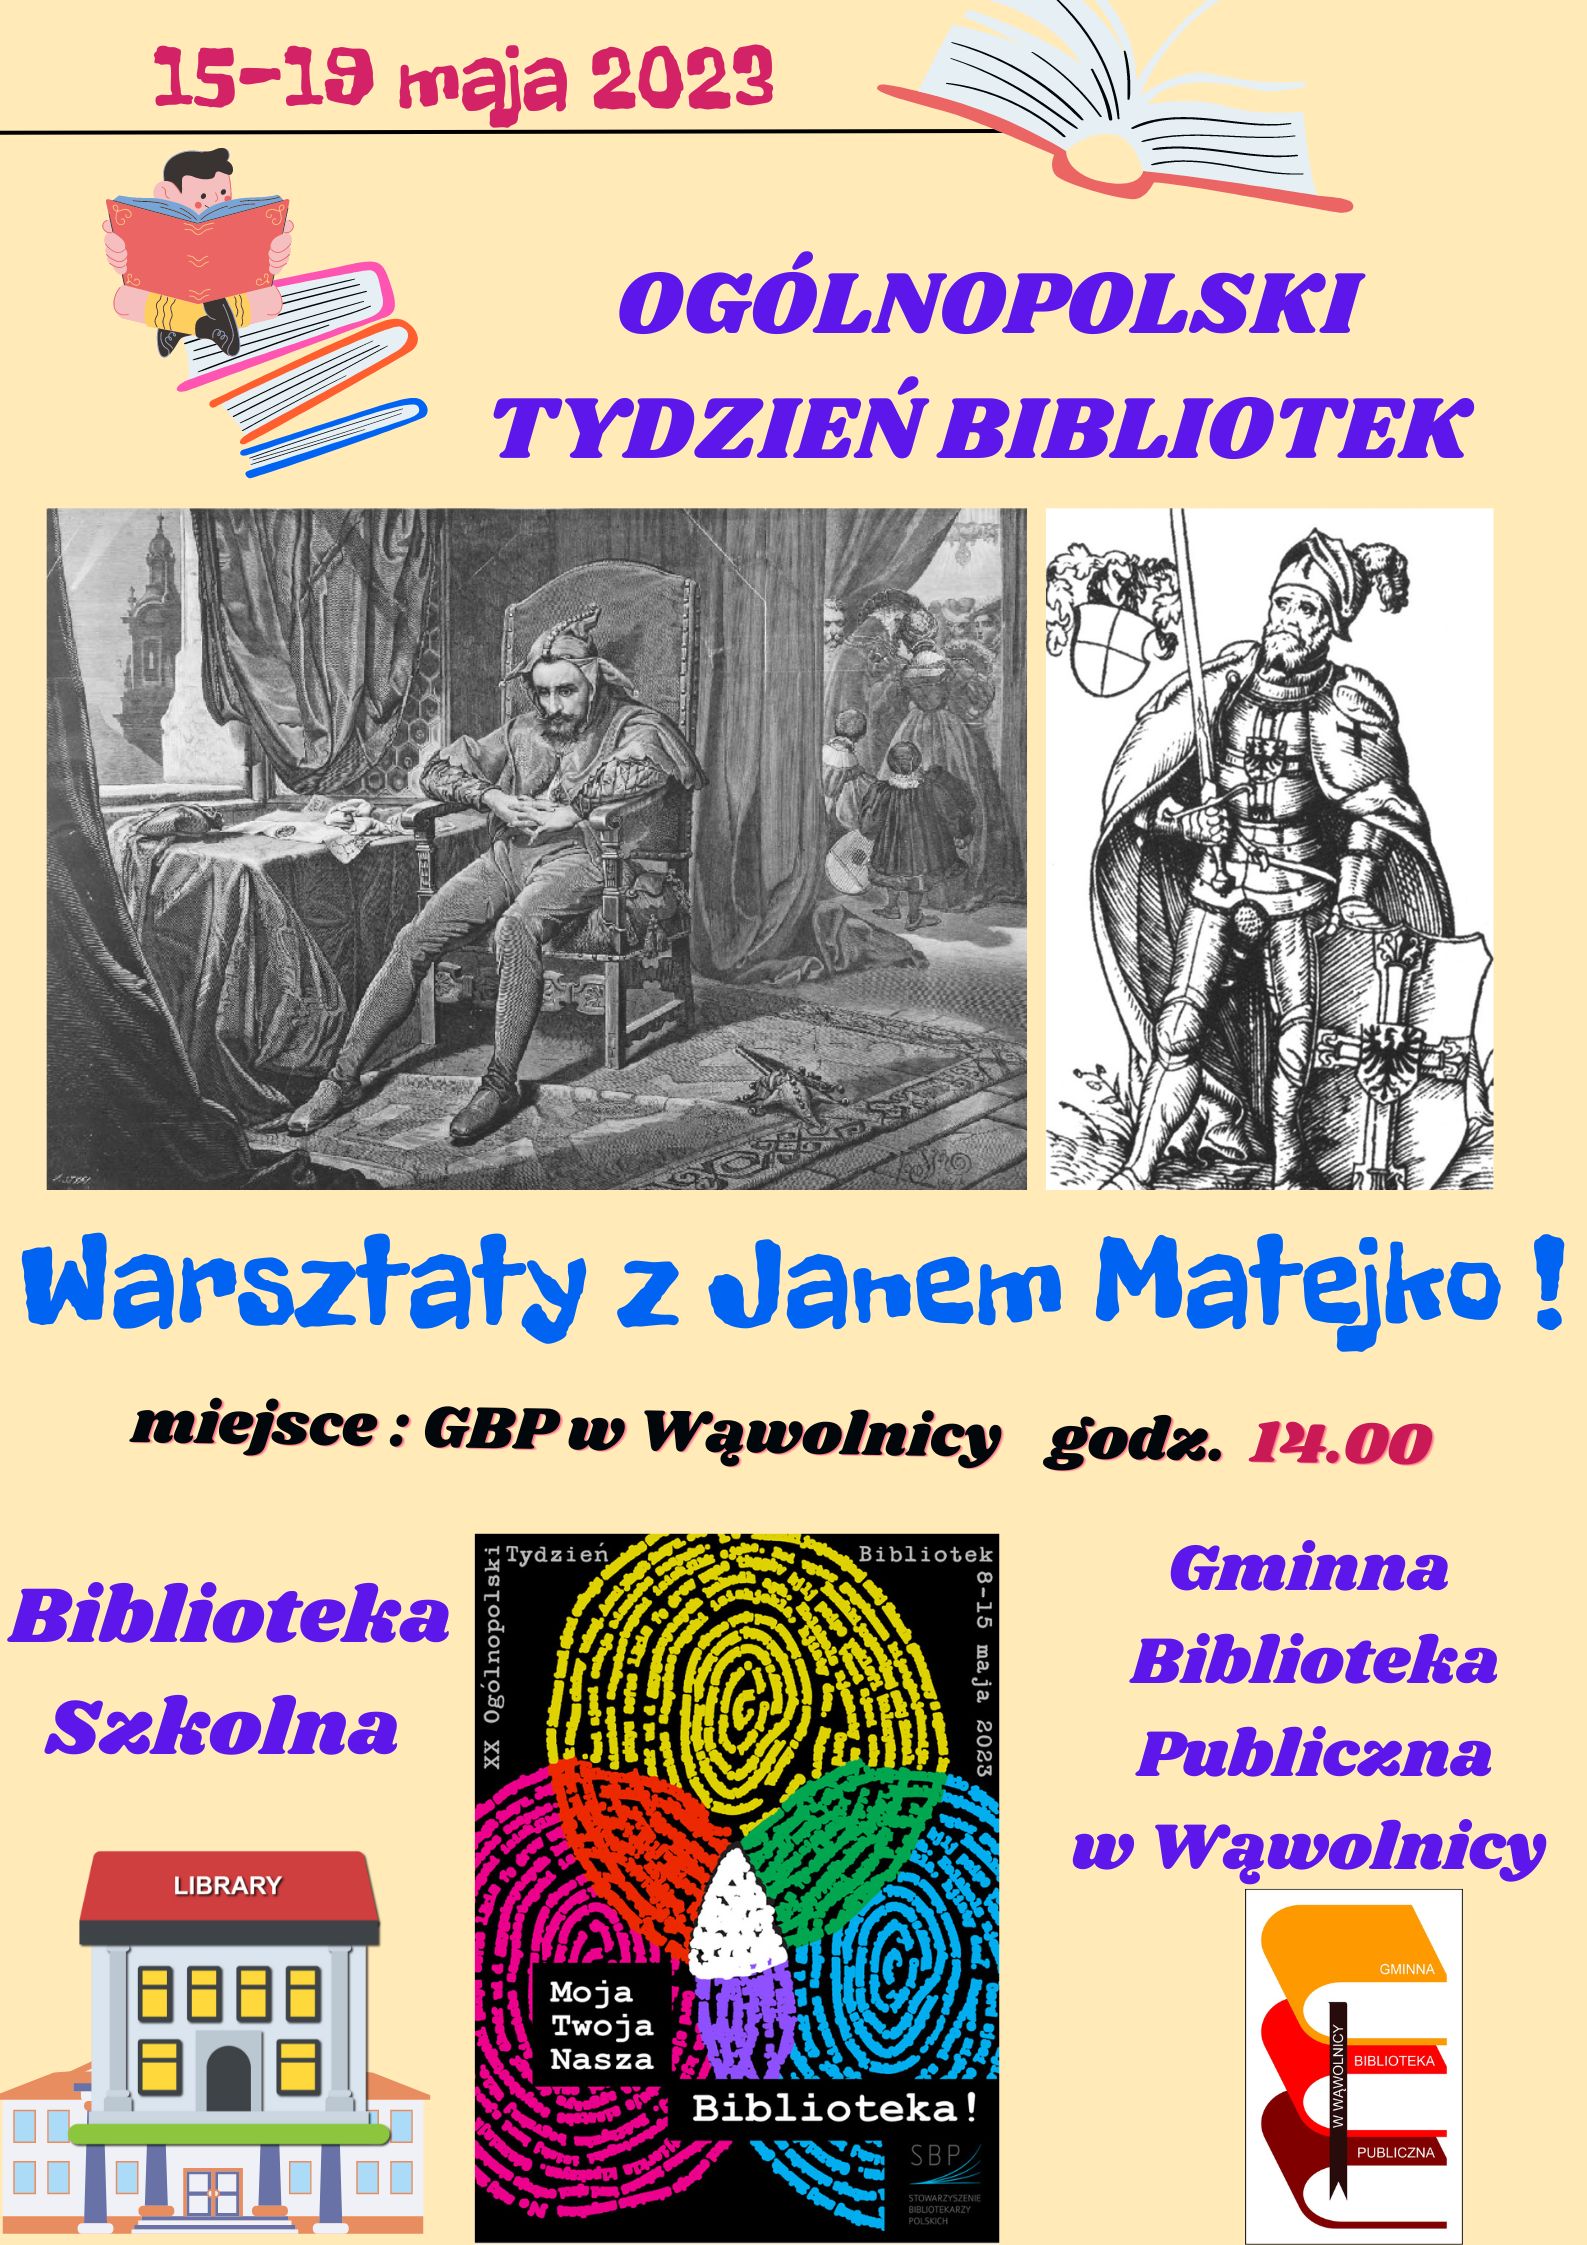 Zdjęcie prezentuje plakat zapraszający na warsztaty literacko-plastyczne, których głównym tematem będzie życie i twórczość Jana Matejki w wąwolnickiej bibliotece.